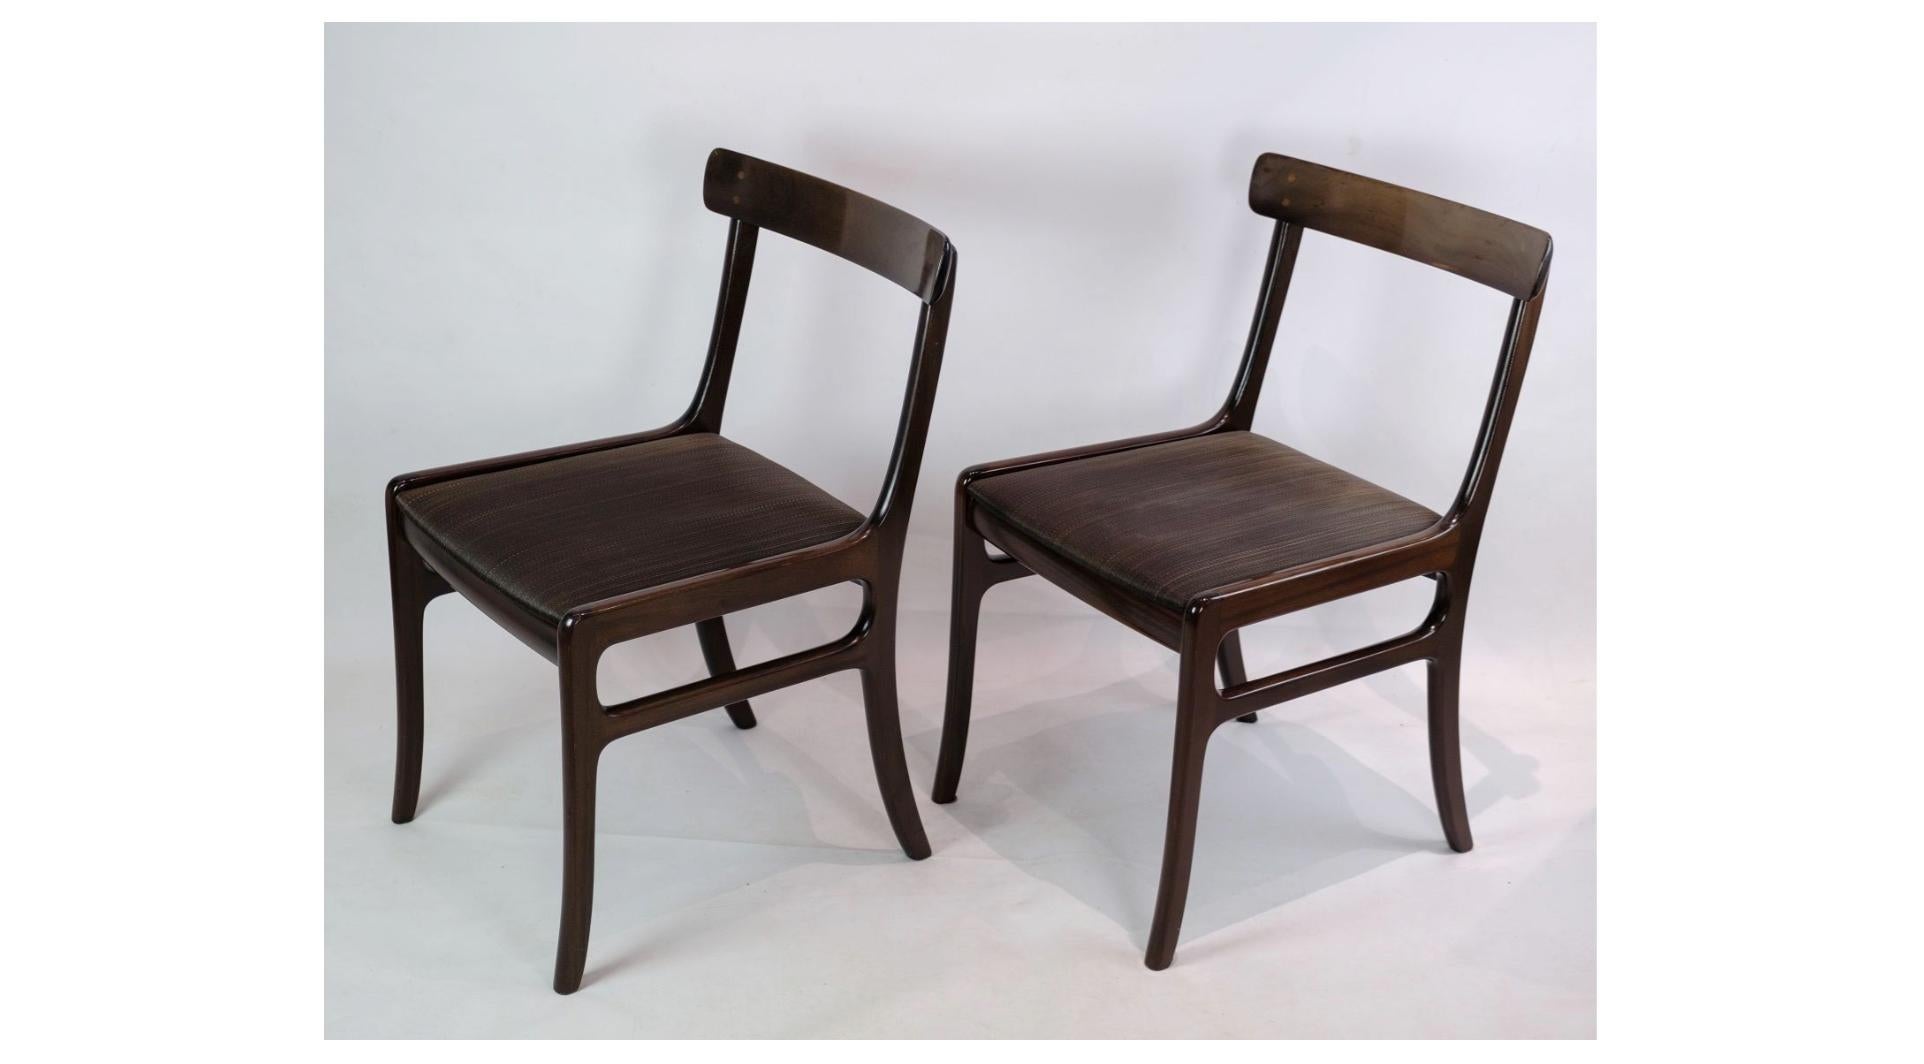 Une paire de chaises de salle à manger en acajou Rungstedlund, conçue par Ole Wanscher et fabriquée par P. Jeppesen, est un bel exemple de design danois intemporel. Ces chaises dégagent une élégance et une simplicité sublimes qui ajouteront une